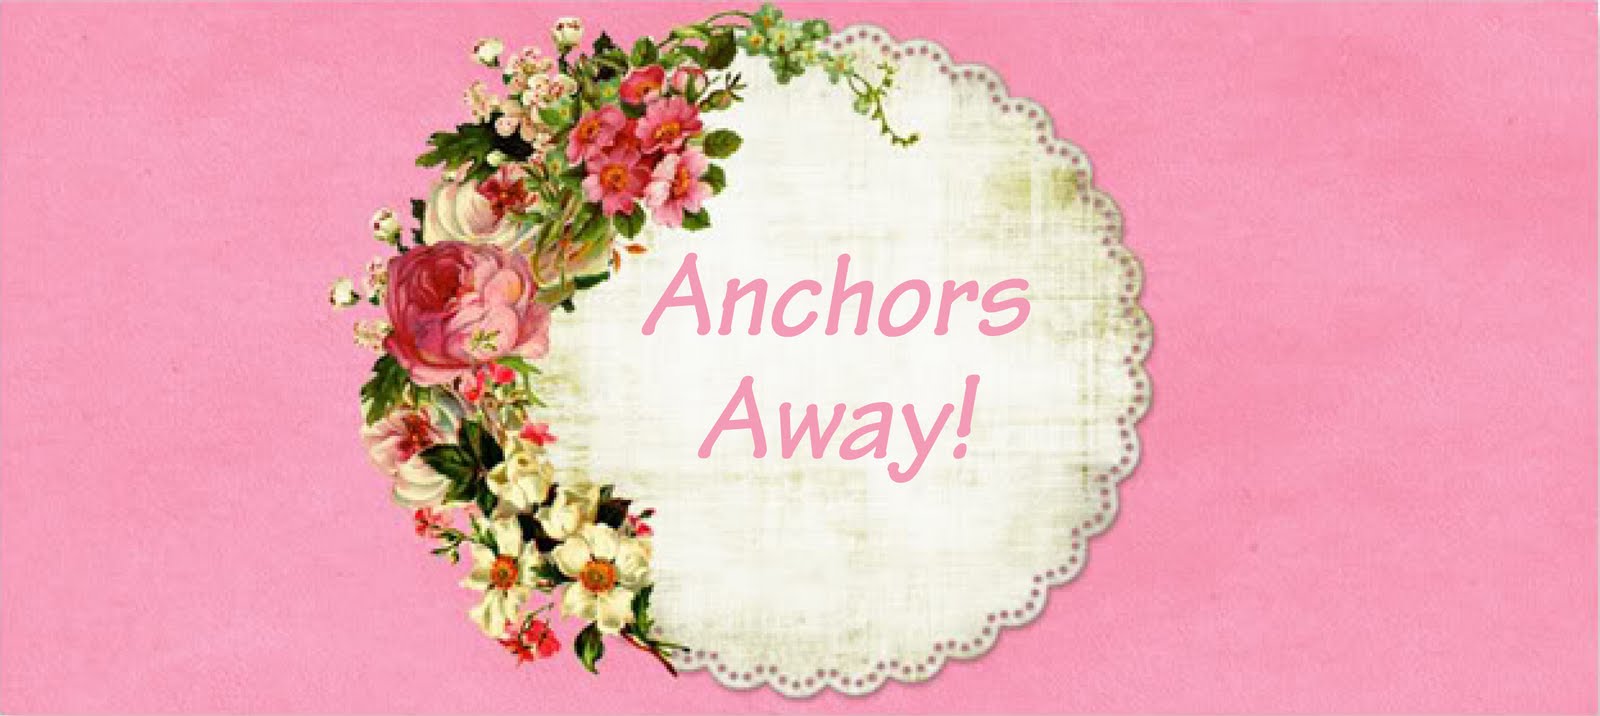 Anchors Away!